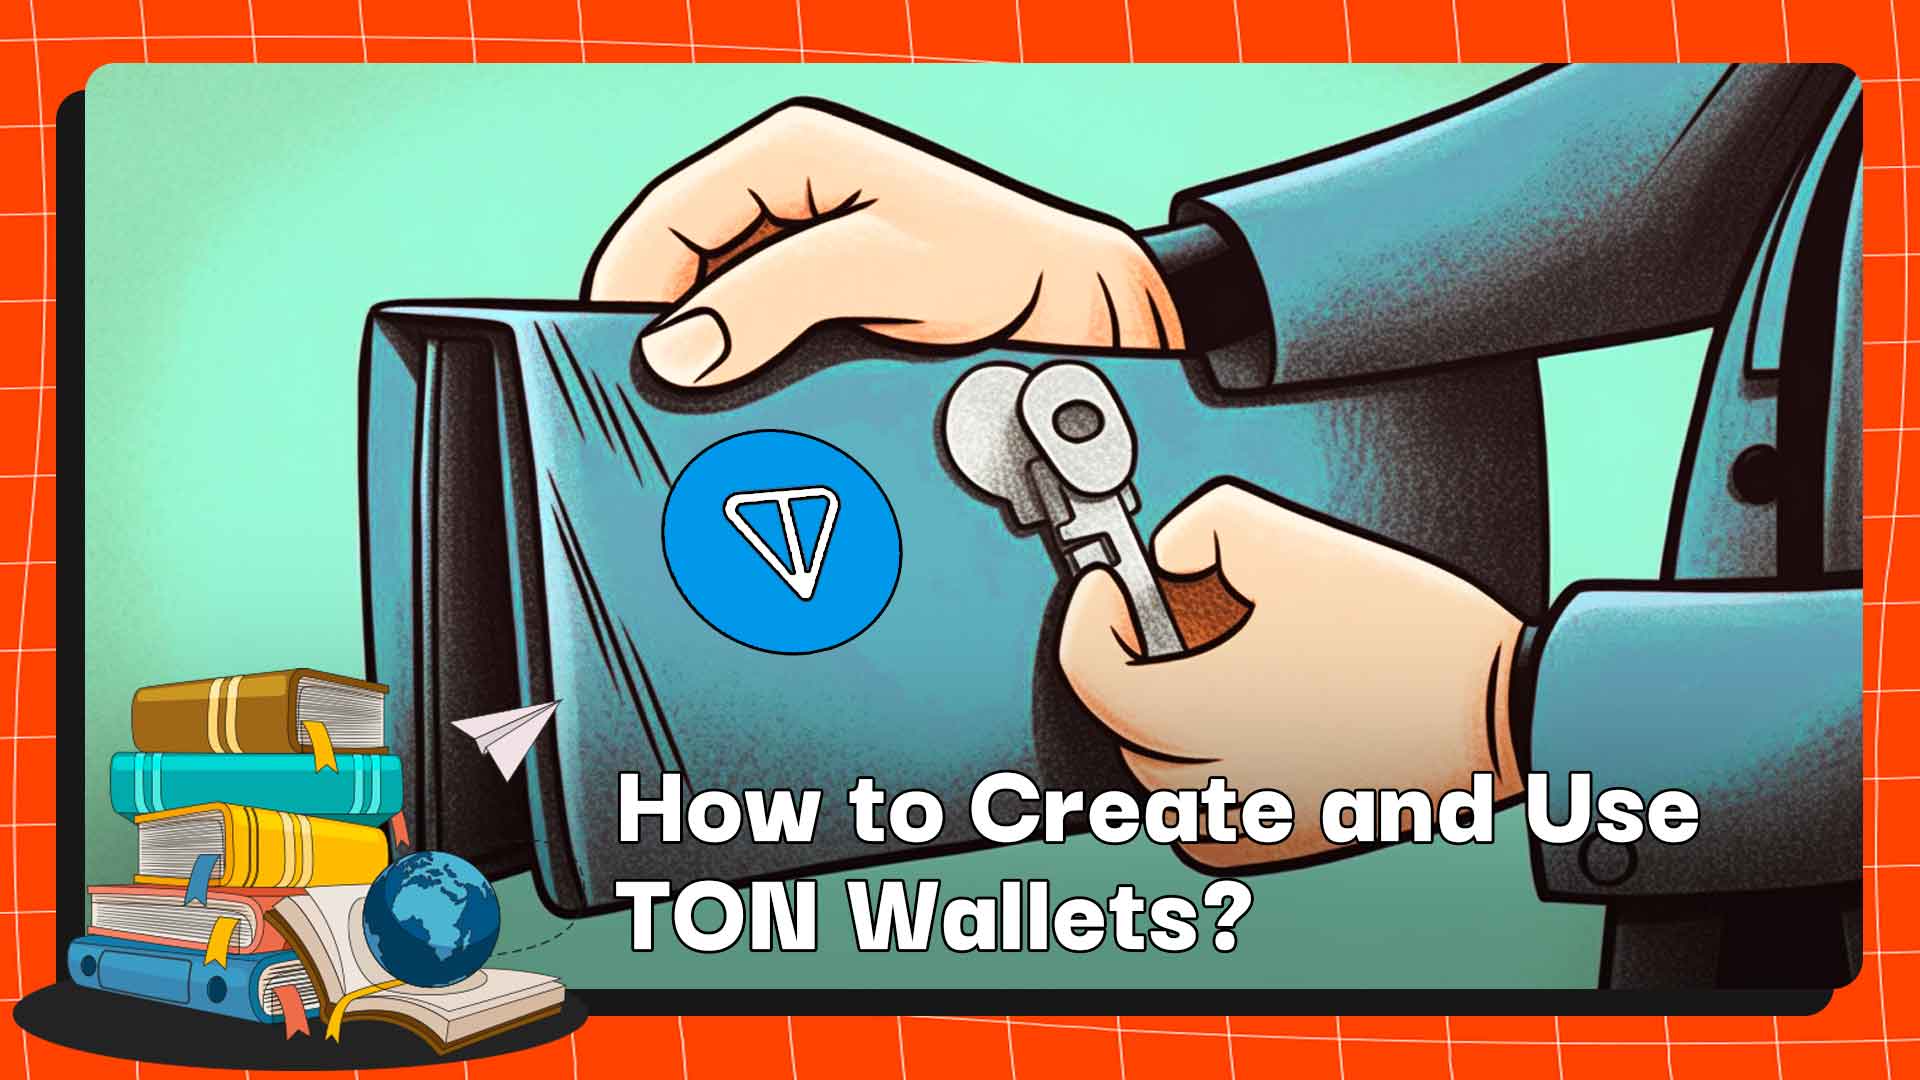 TON 지갑을 만들고 사용하는 방법은 무엇입니까?